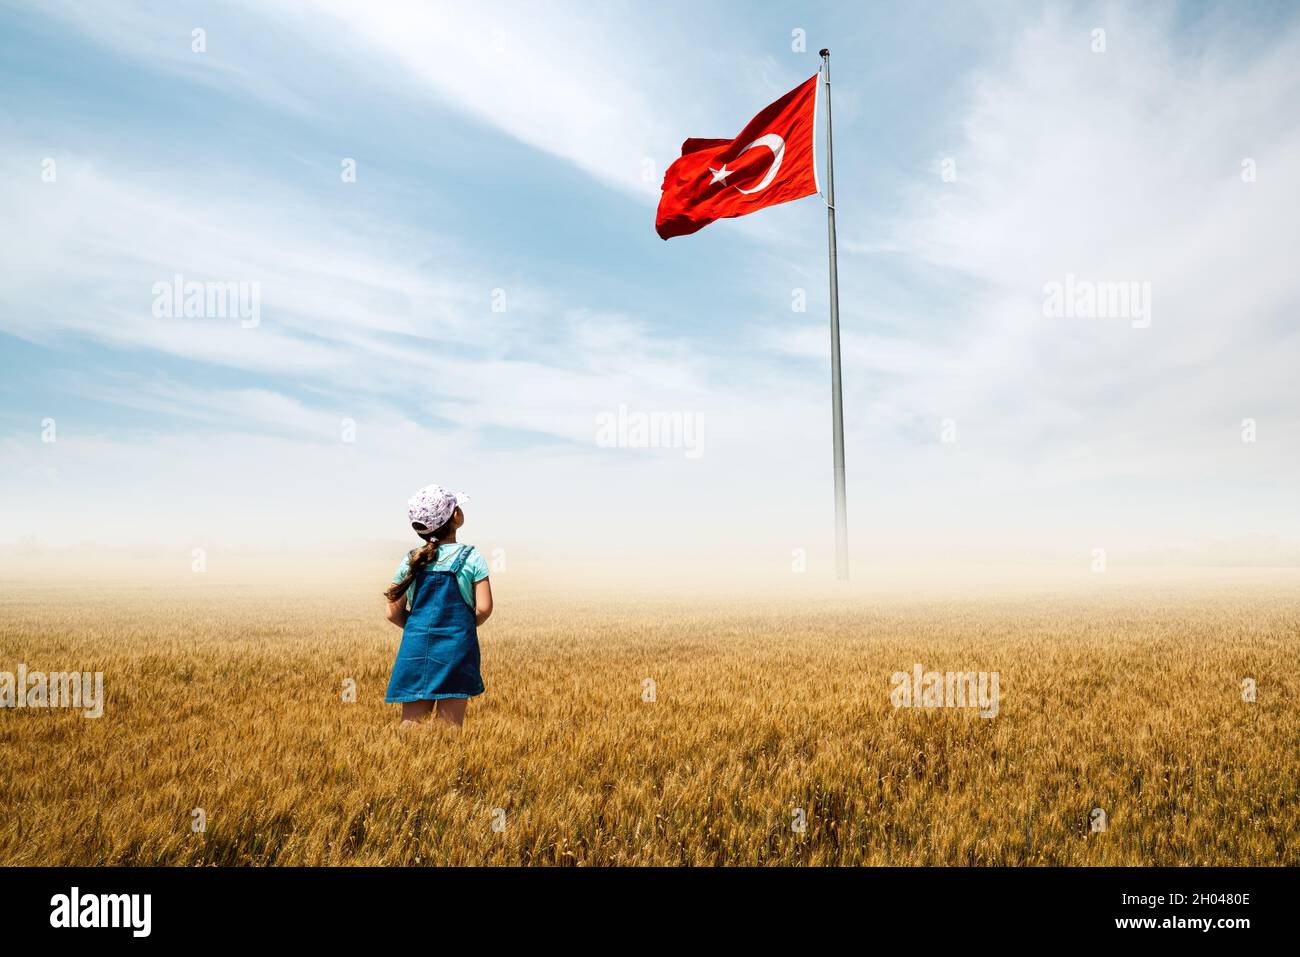 Adorabile bambina è in un campo con nebbia e guardando ammirevolmente alla bandiera nazionale turca. Foto di alta qualità Foto Stock